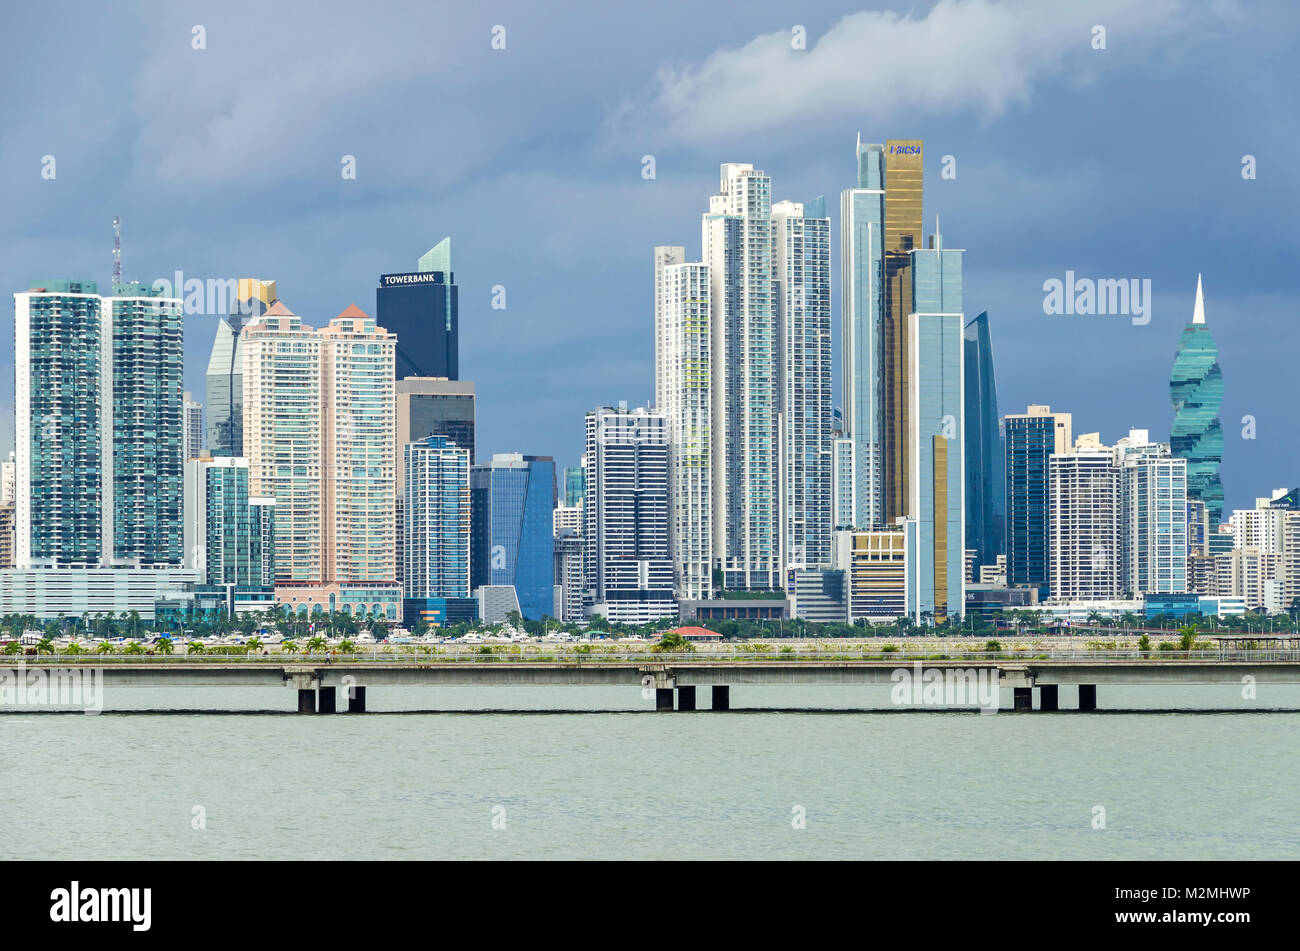 Panama City, Panama - November 3, 2017: Skyline von Panama City an einem bewölkten Tag mit modernen Gebäuden, die F&F Tower, Tower Bank und Bicsa finanzielle Ce Stockfoto